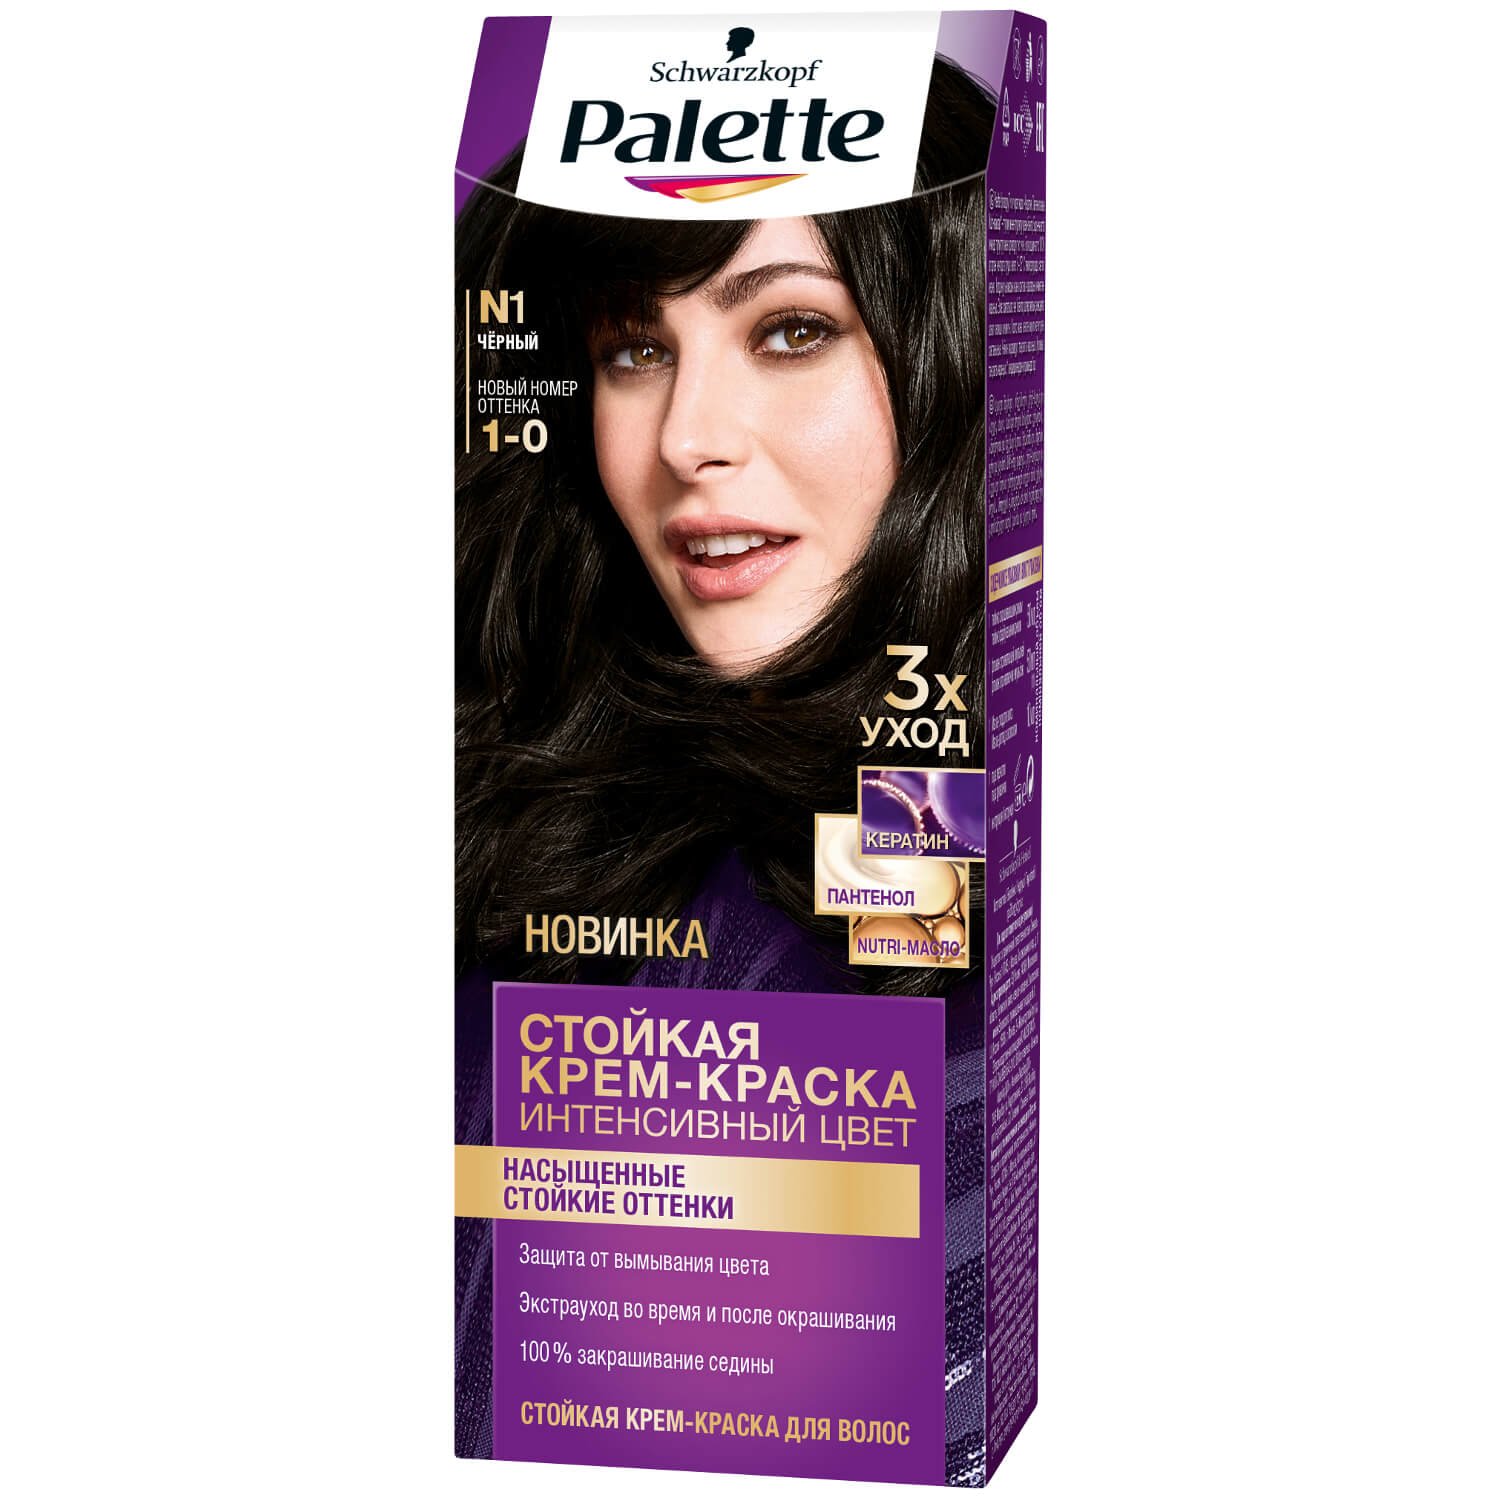 Palette ICC Краска для волос 1-0 (N1) Черный 110 мл